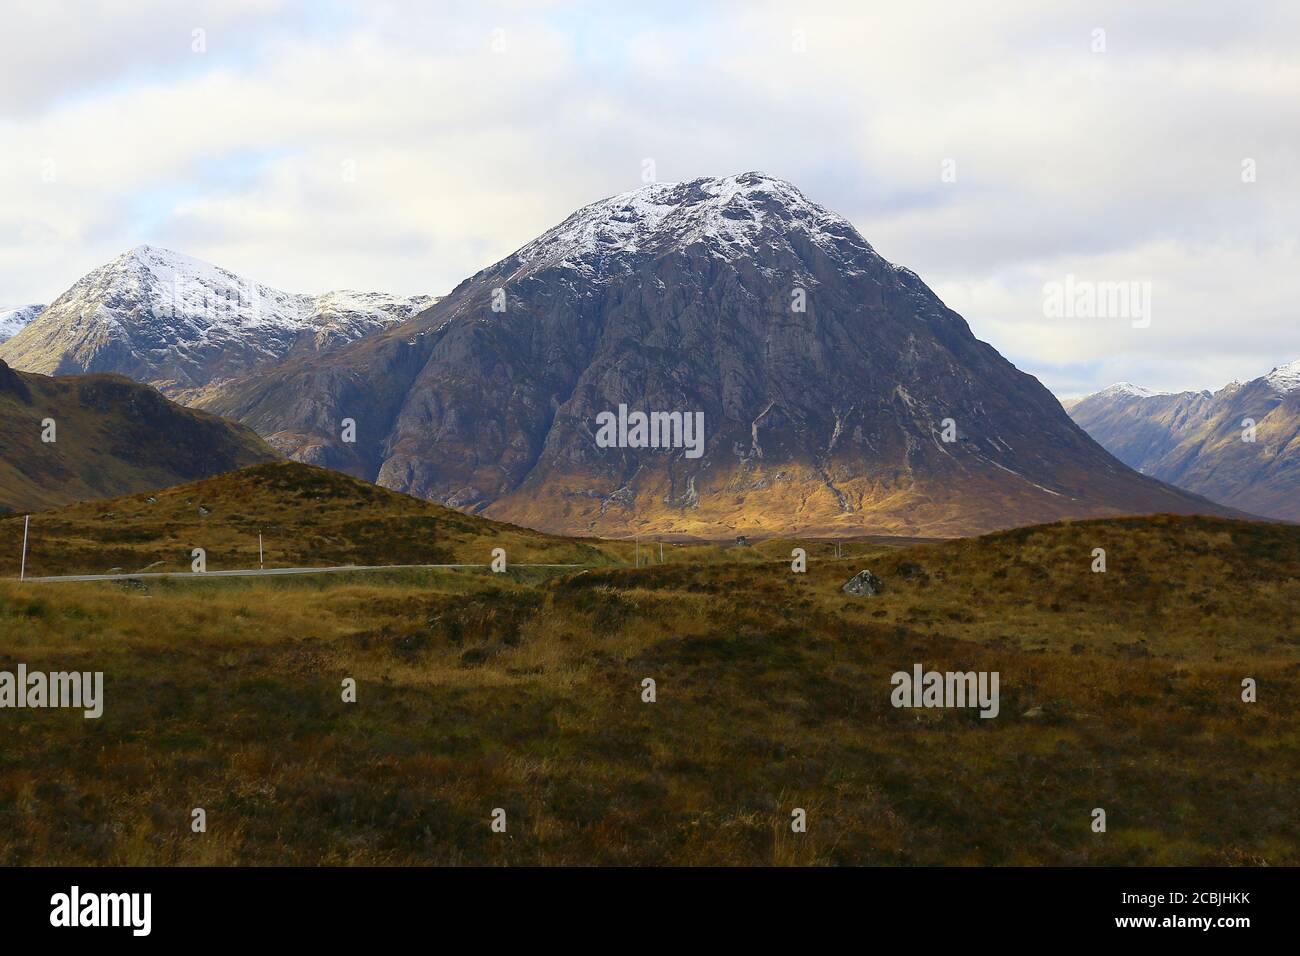 Die schottischen Berge zeigen ihre Schönheit in der Wildnis. Stockfoto